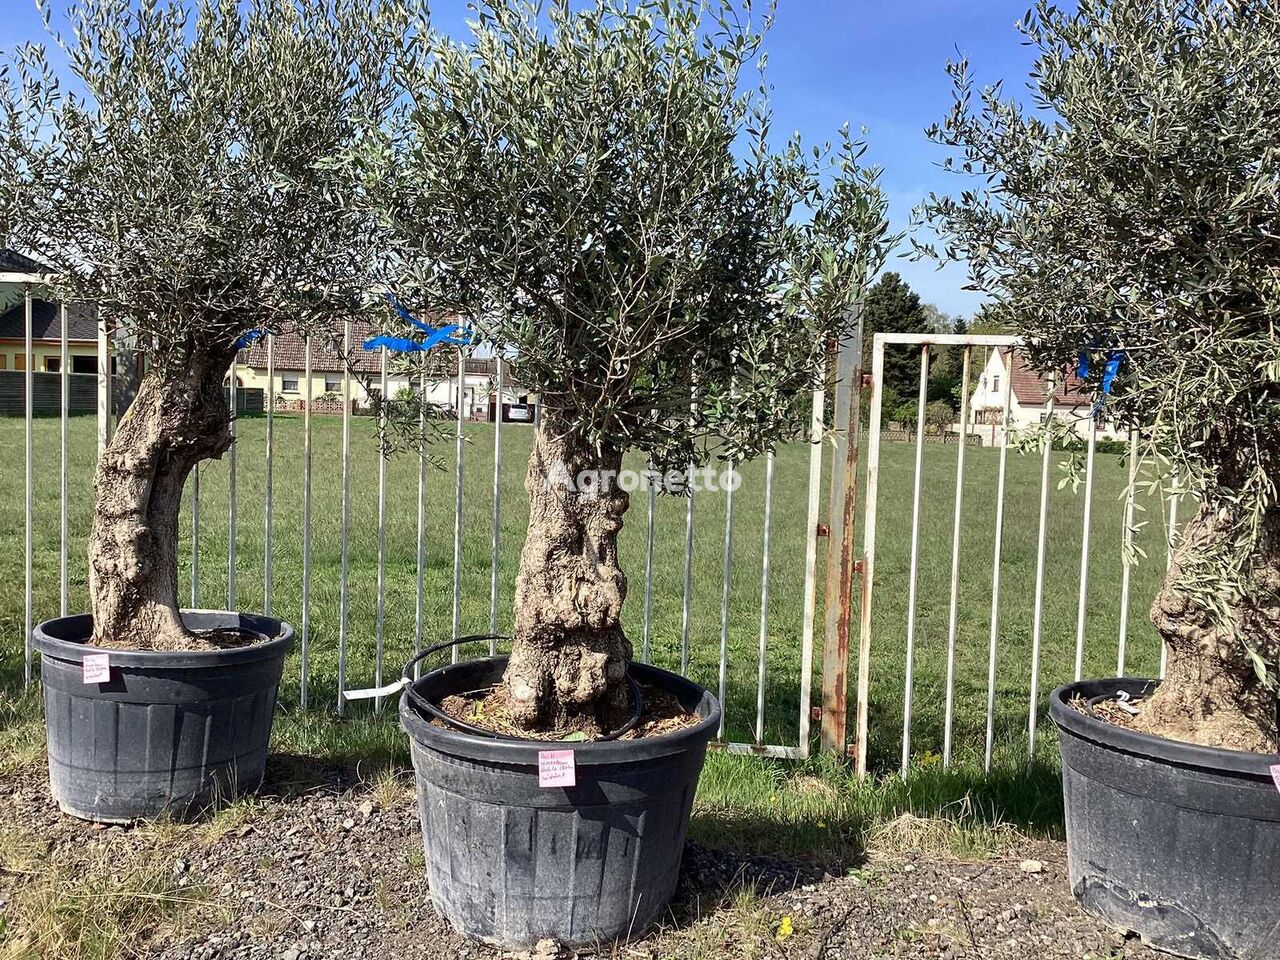 Olivenbaum (Winterhart) arbolito de frutal